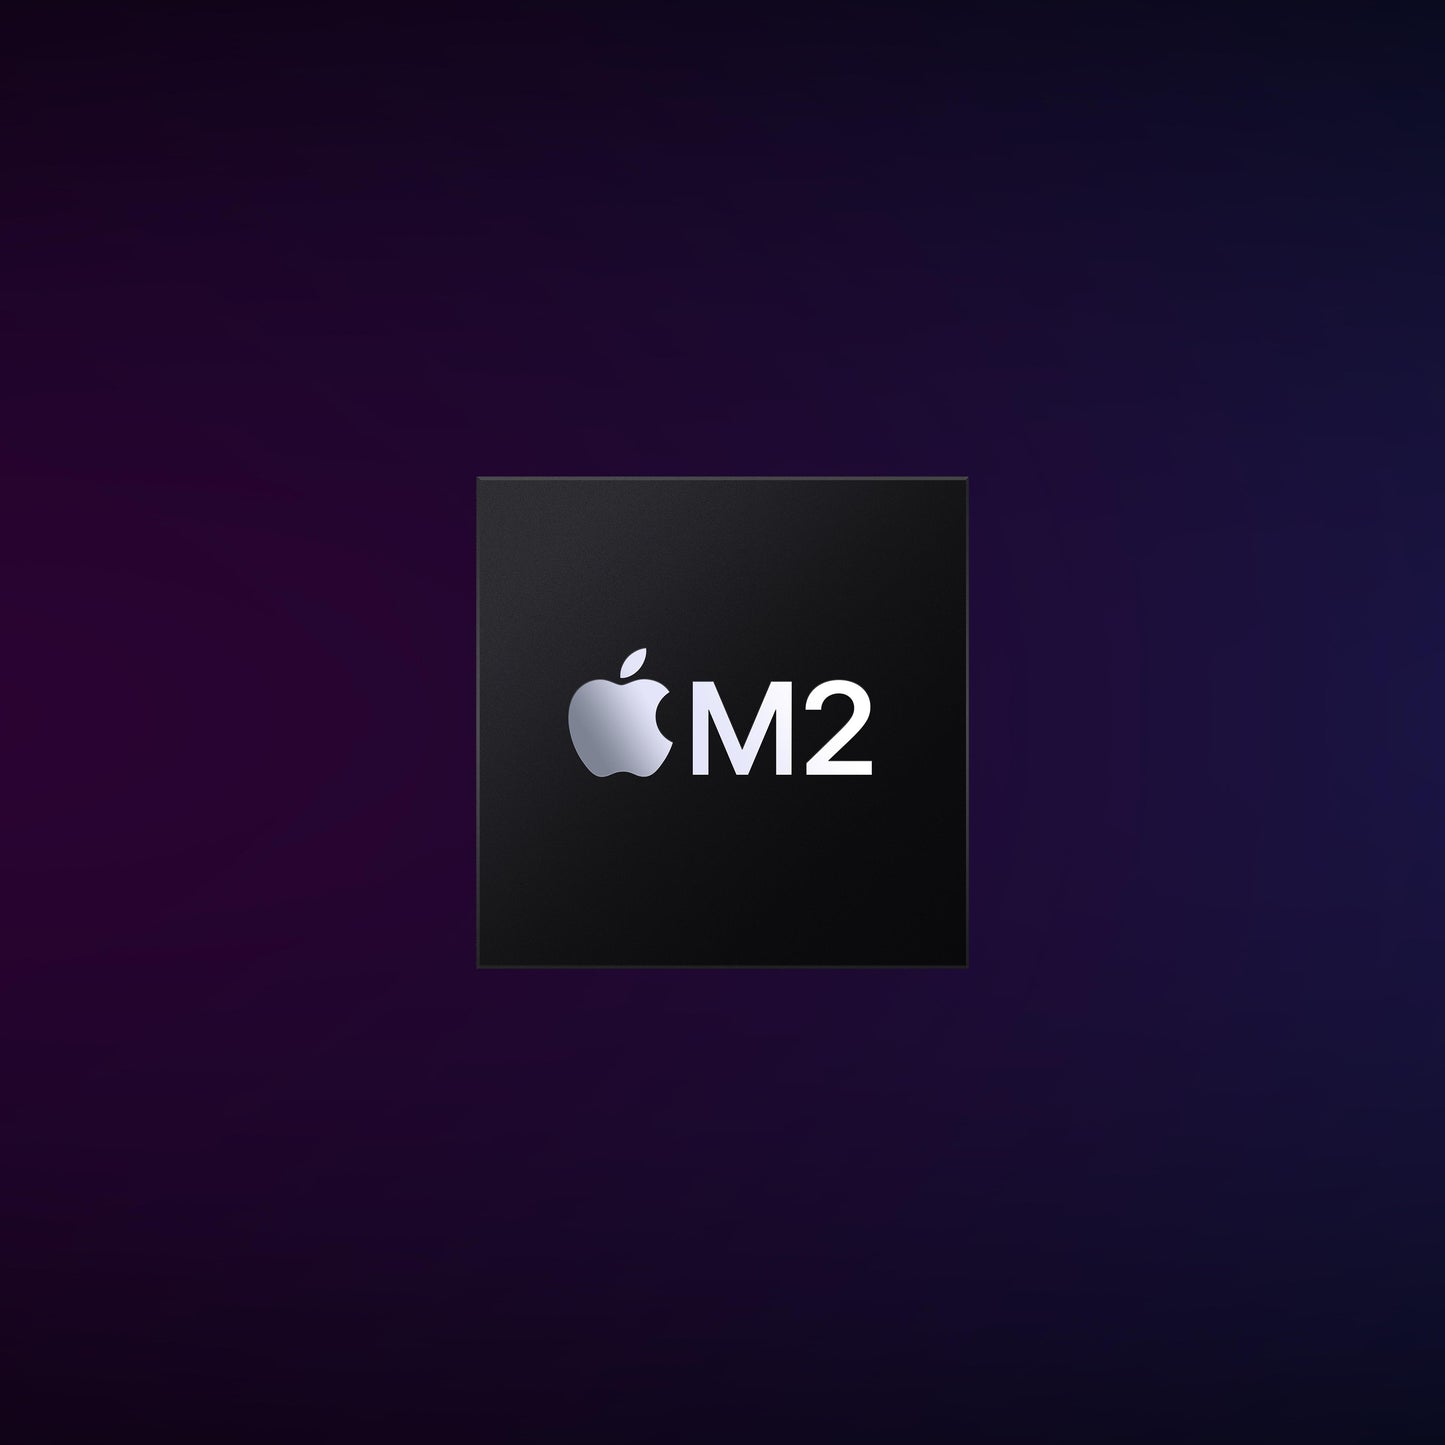 Mac mini: Apple M2 chip with 8_core CPU and 10_core GPU, 256GB SSD - Silver